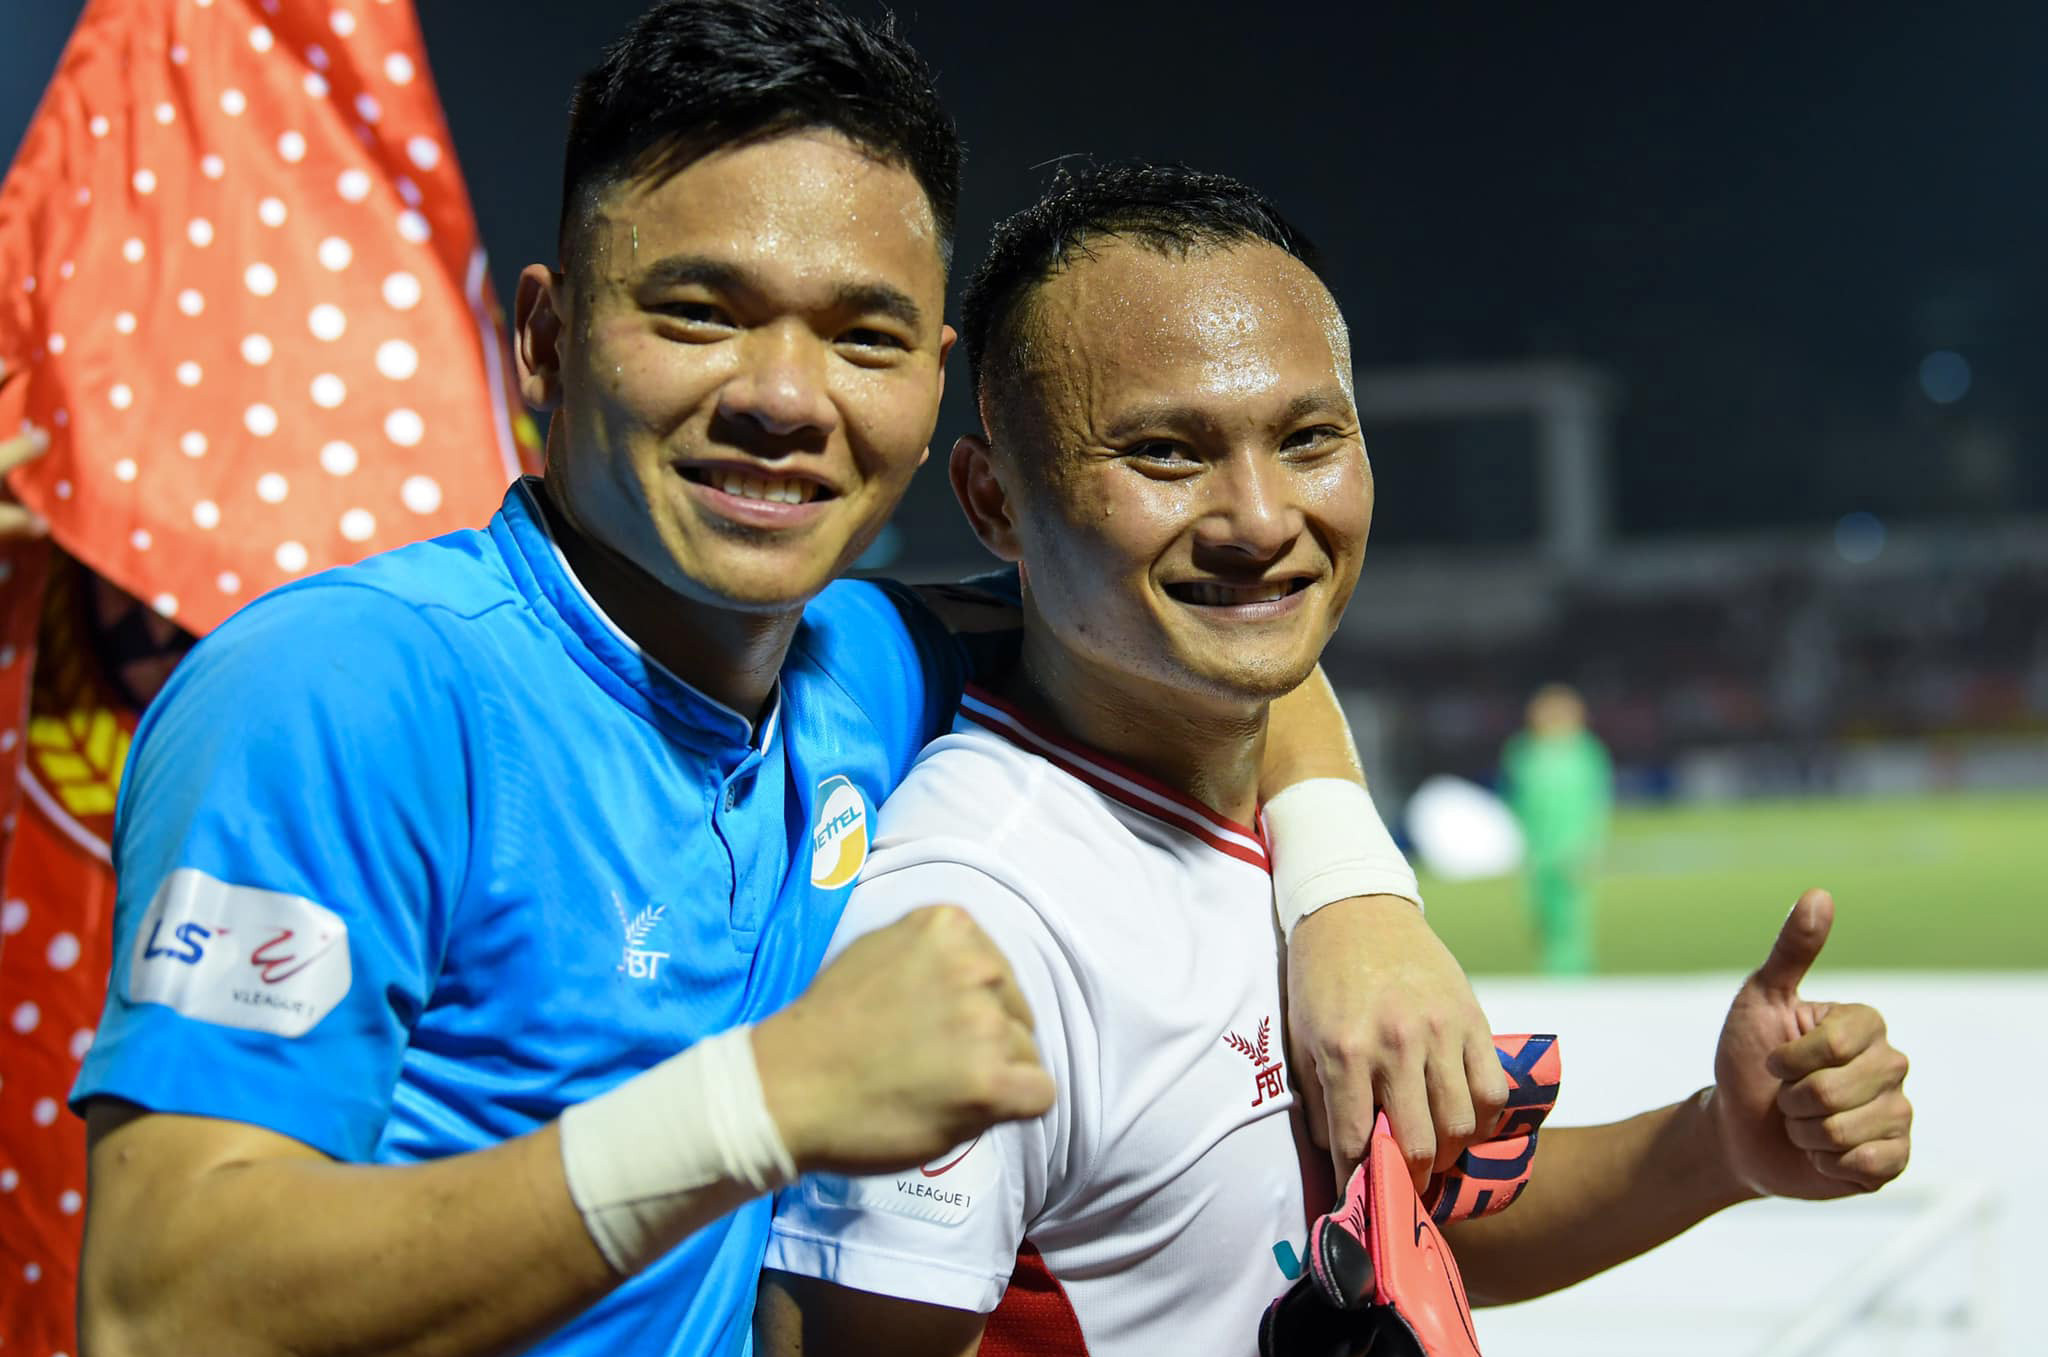 Tiền vệ Nguyễn Trọng Hoàng vô địch V.League trong 3 màu áo khác nhau là SLNA, Bình Dương và Viettel - đây là kỷ lục của giải đấu. Ảnh: Mạnh Quân